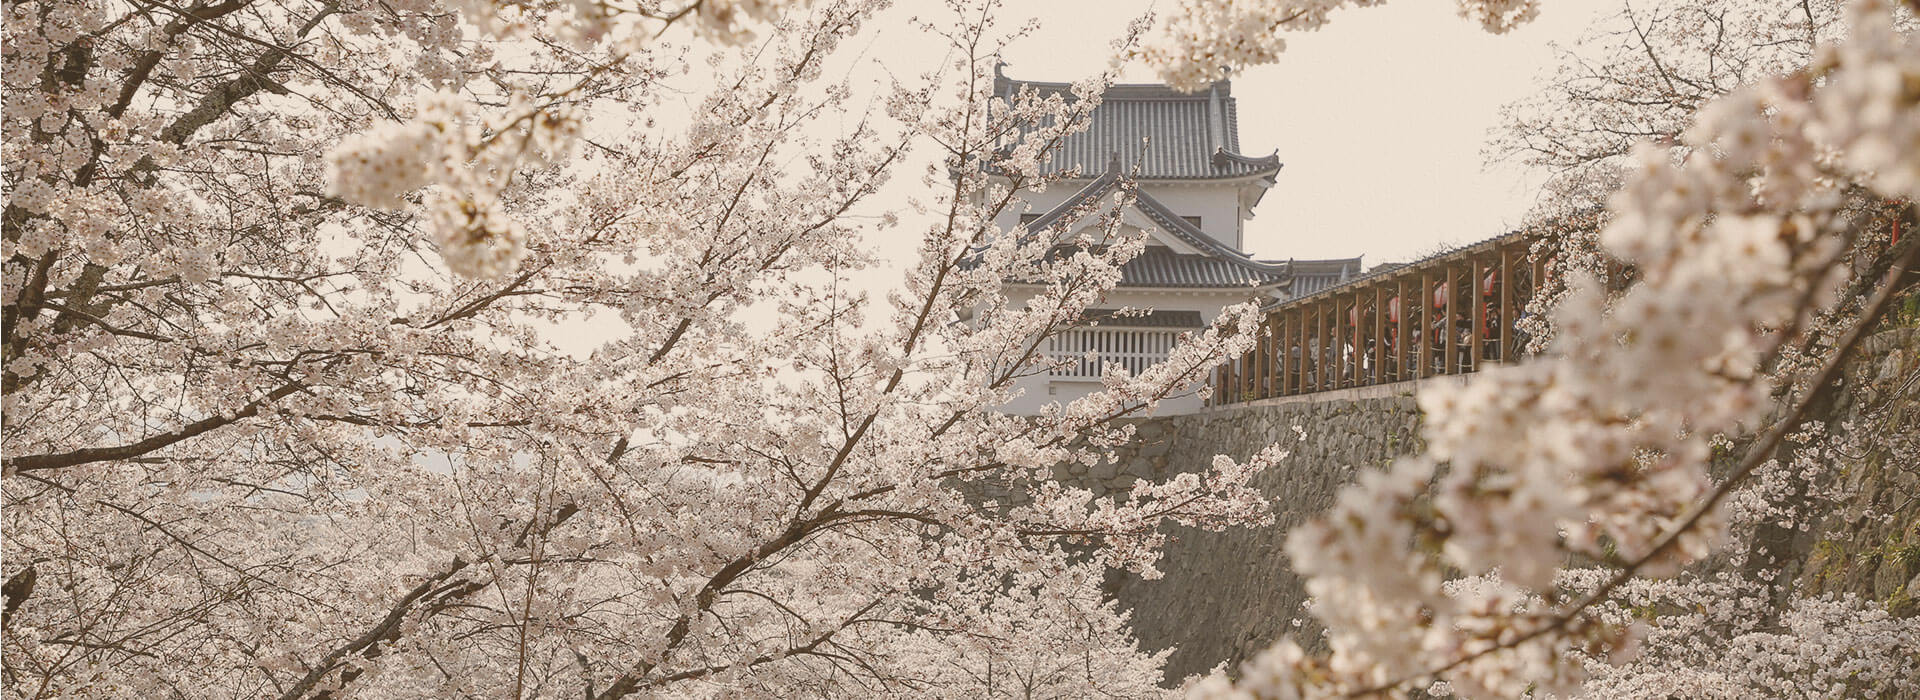 桜の名所であり、歴史残る地、岡山津山。